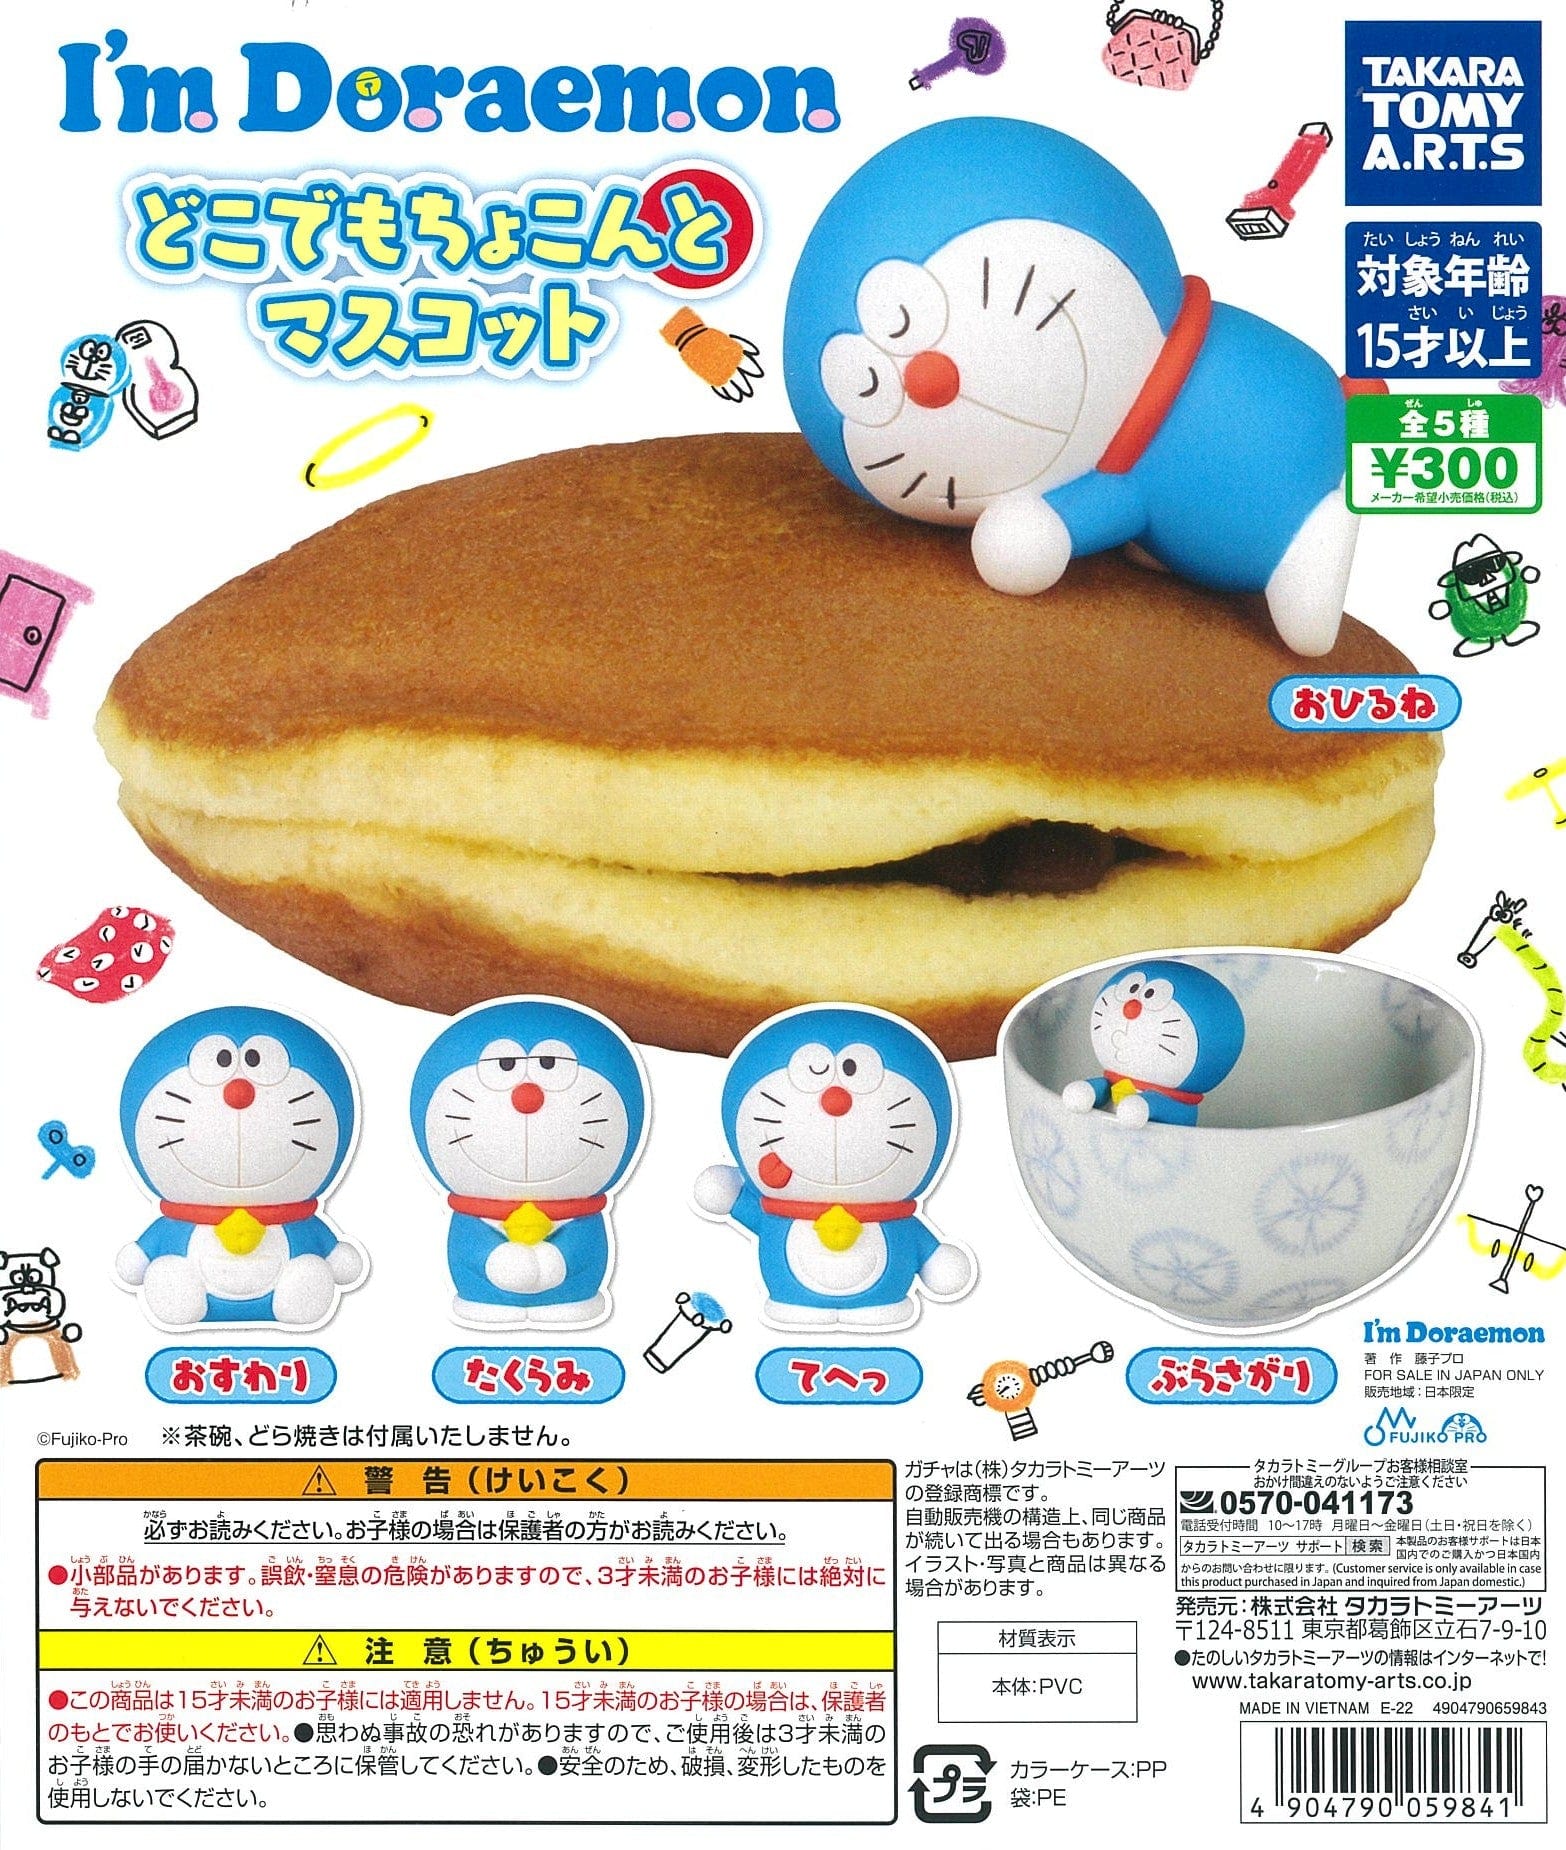 Takara Tomy A.R.T.S CP1642 I'm Doraemon Dokodemo Chokonto Mascot